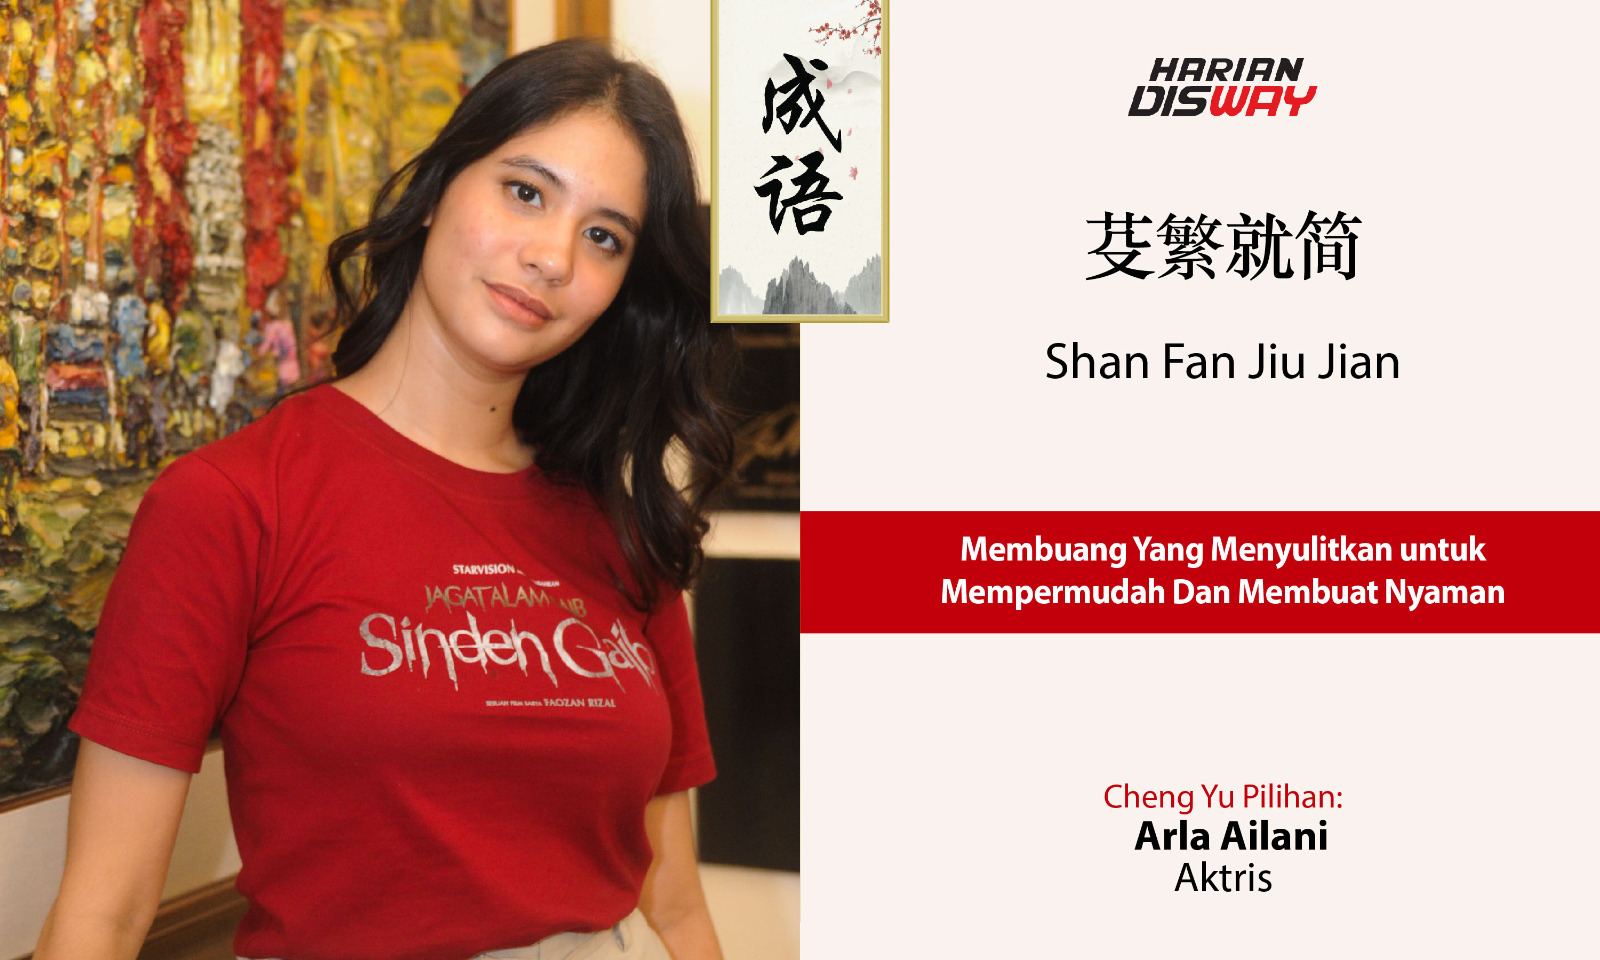 Cheng Yu Pilihan Aktris Arla Arliani: Shan Fan Jiu Jian